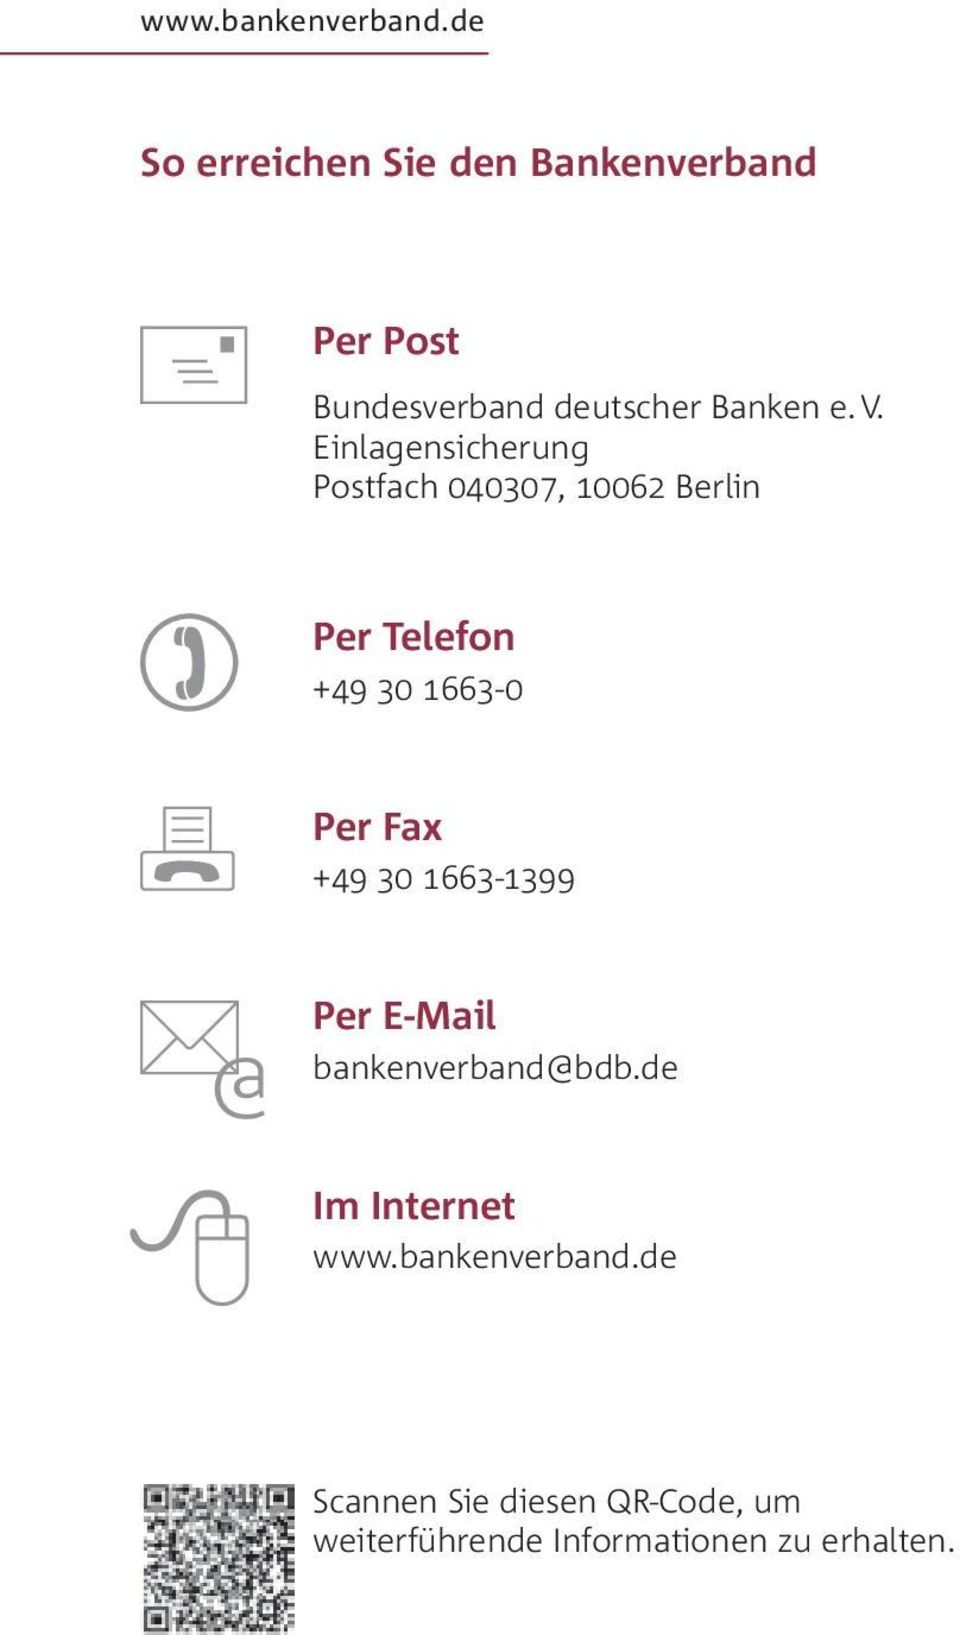 Einlagensicherung Postfach 040307, 10062 Berlin Per Telefon +49 30 1663-0 Per Fax